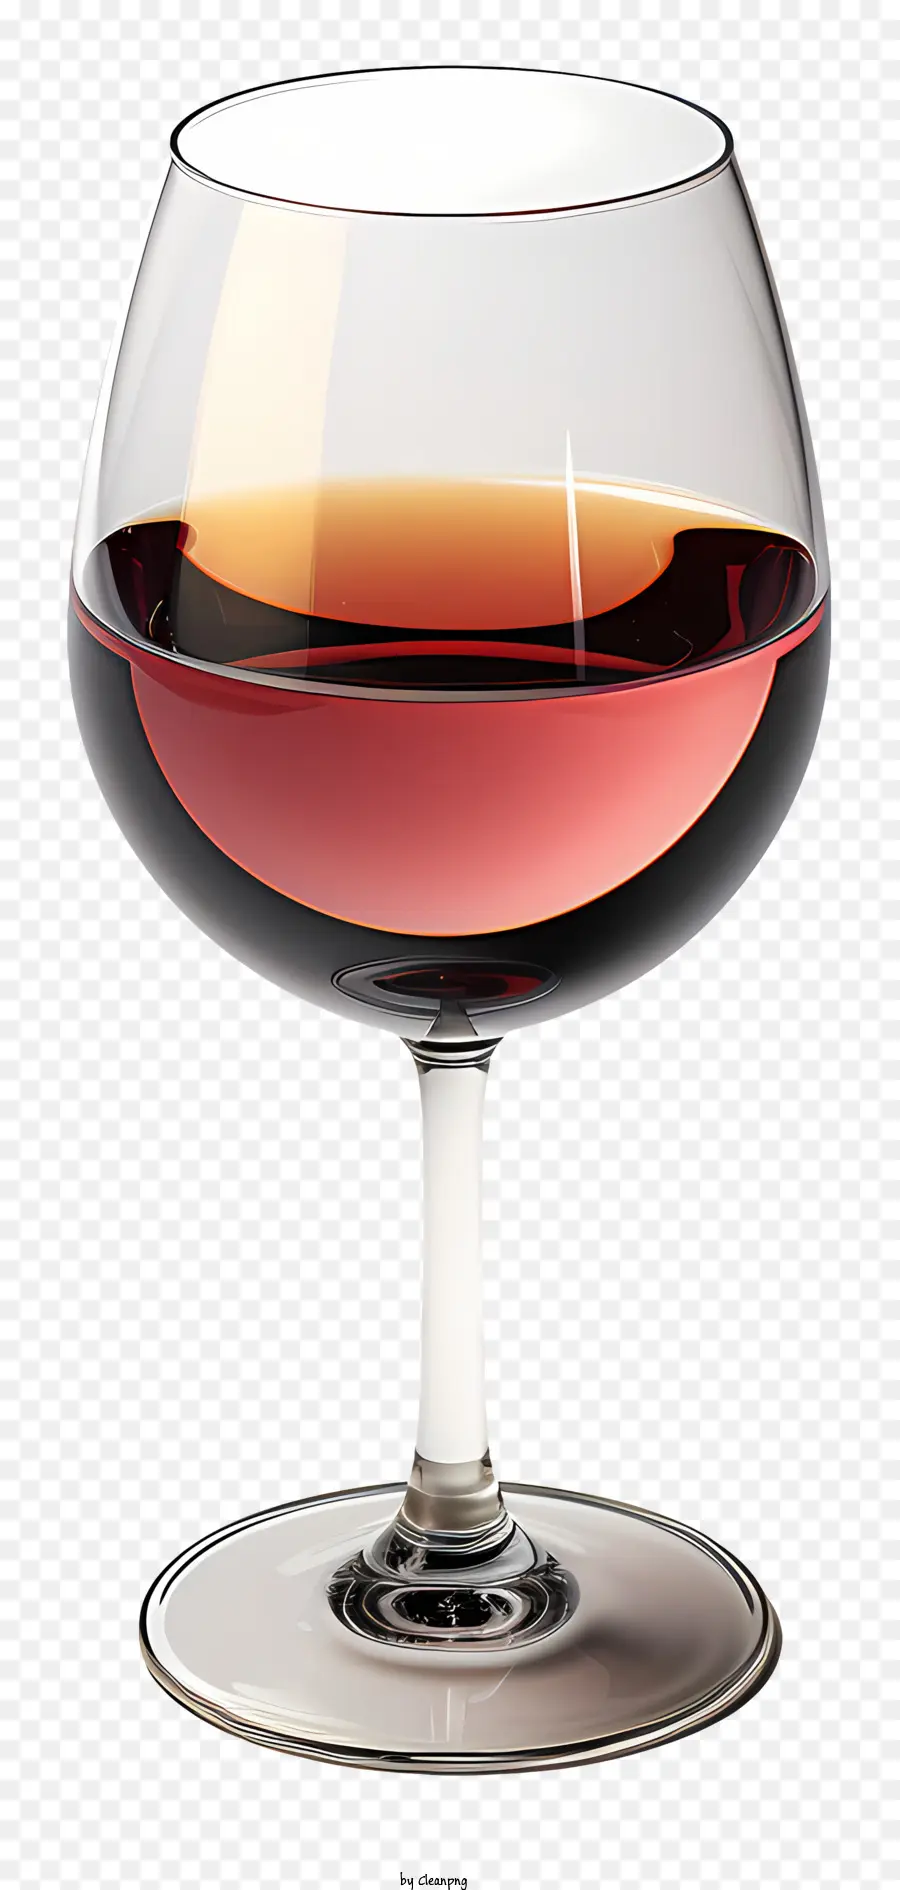 bicchiere di vino - Bicchiere di vino con liquido rosso su sfondo nero